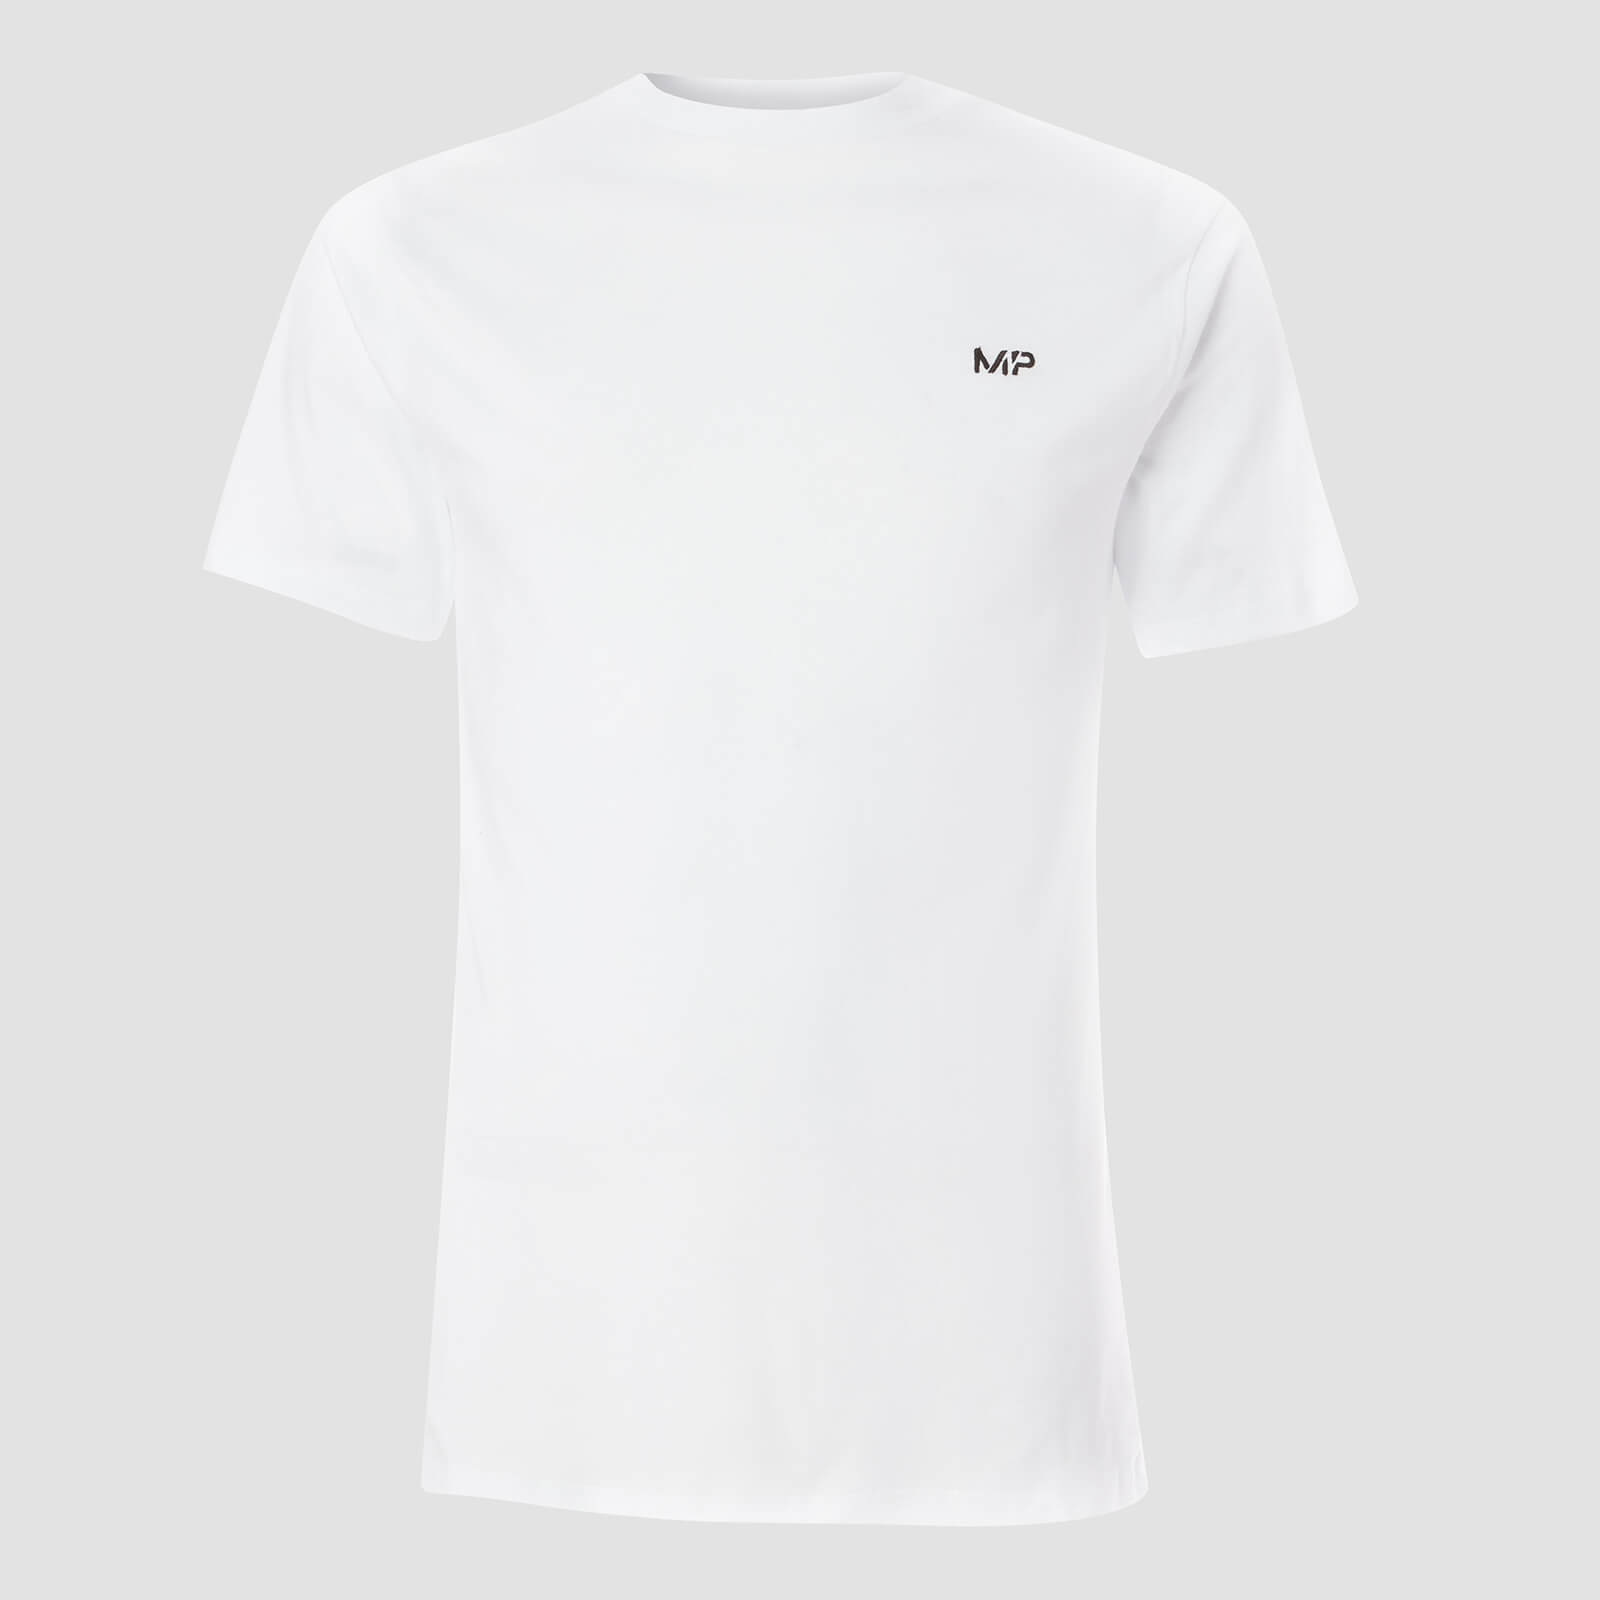 Myprotein T-shirt Essentials MP da uomo (confezione da 2) - Nero/Bianco - L